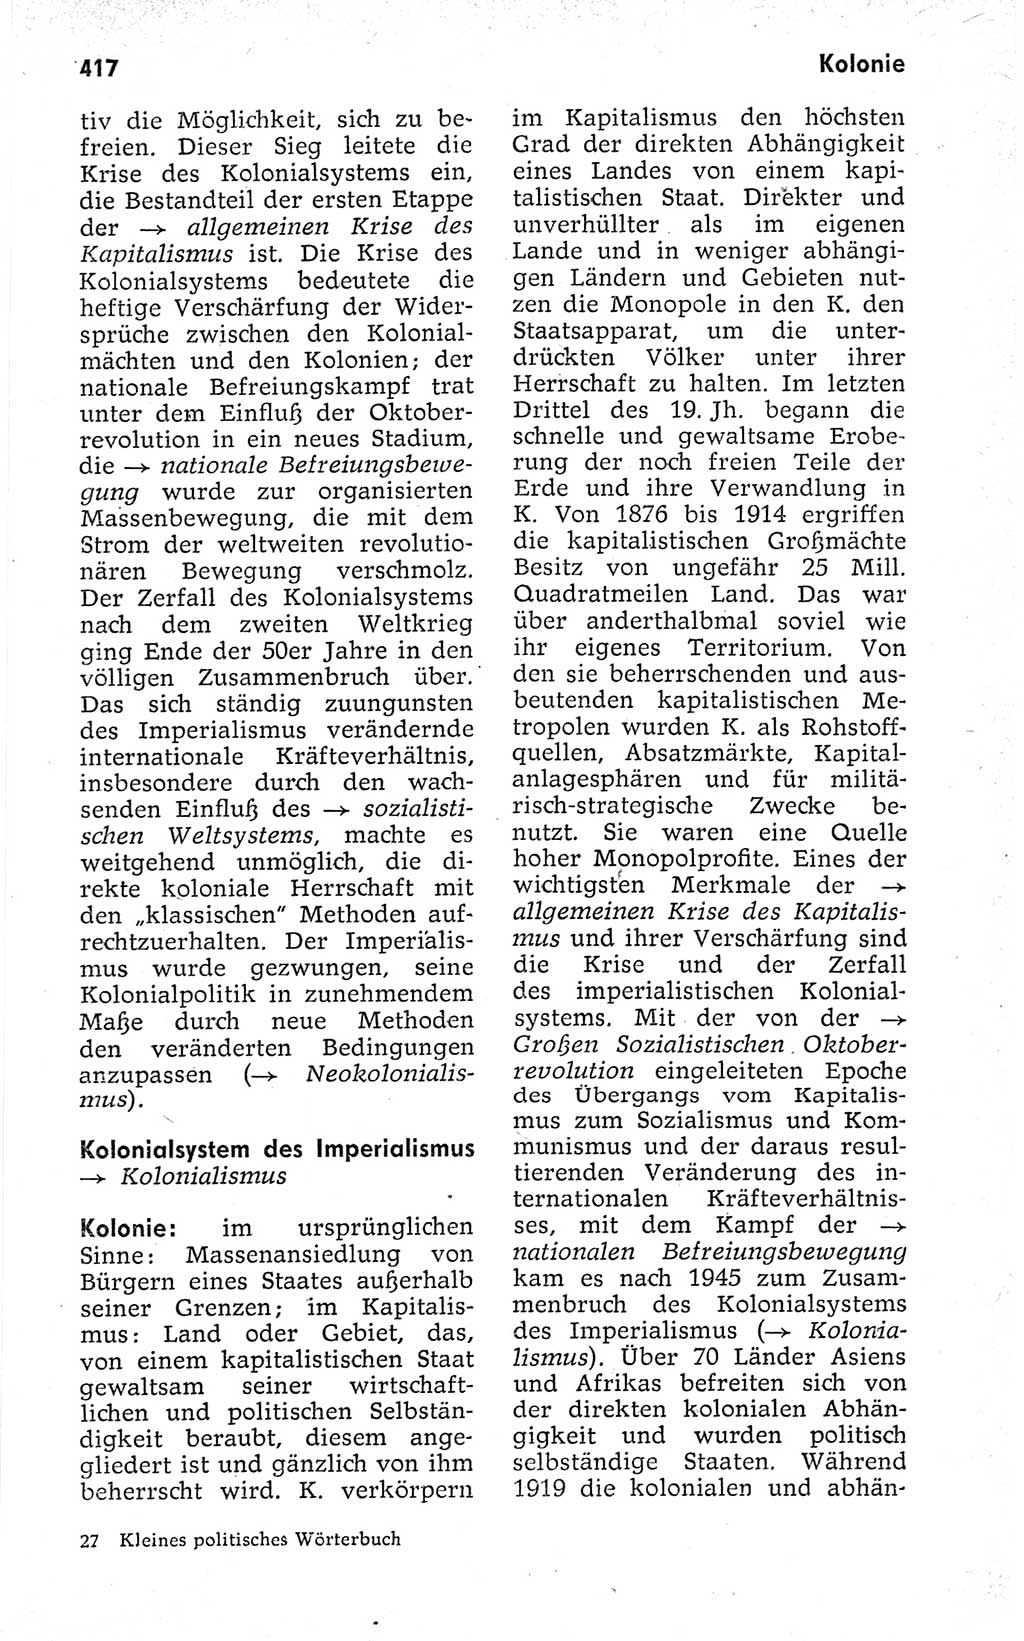 Kleines politisches Wörterbuch [Deutsche Demokratische Republik (DDR)] 1973, Seite 417 (Kl. pol. Wb. DDR 1973, S. 417)